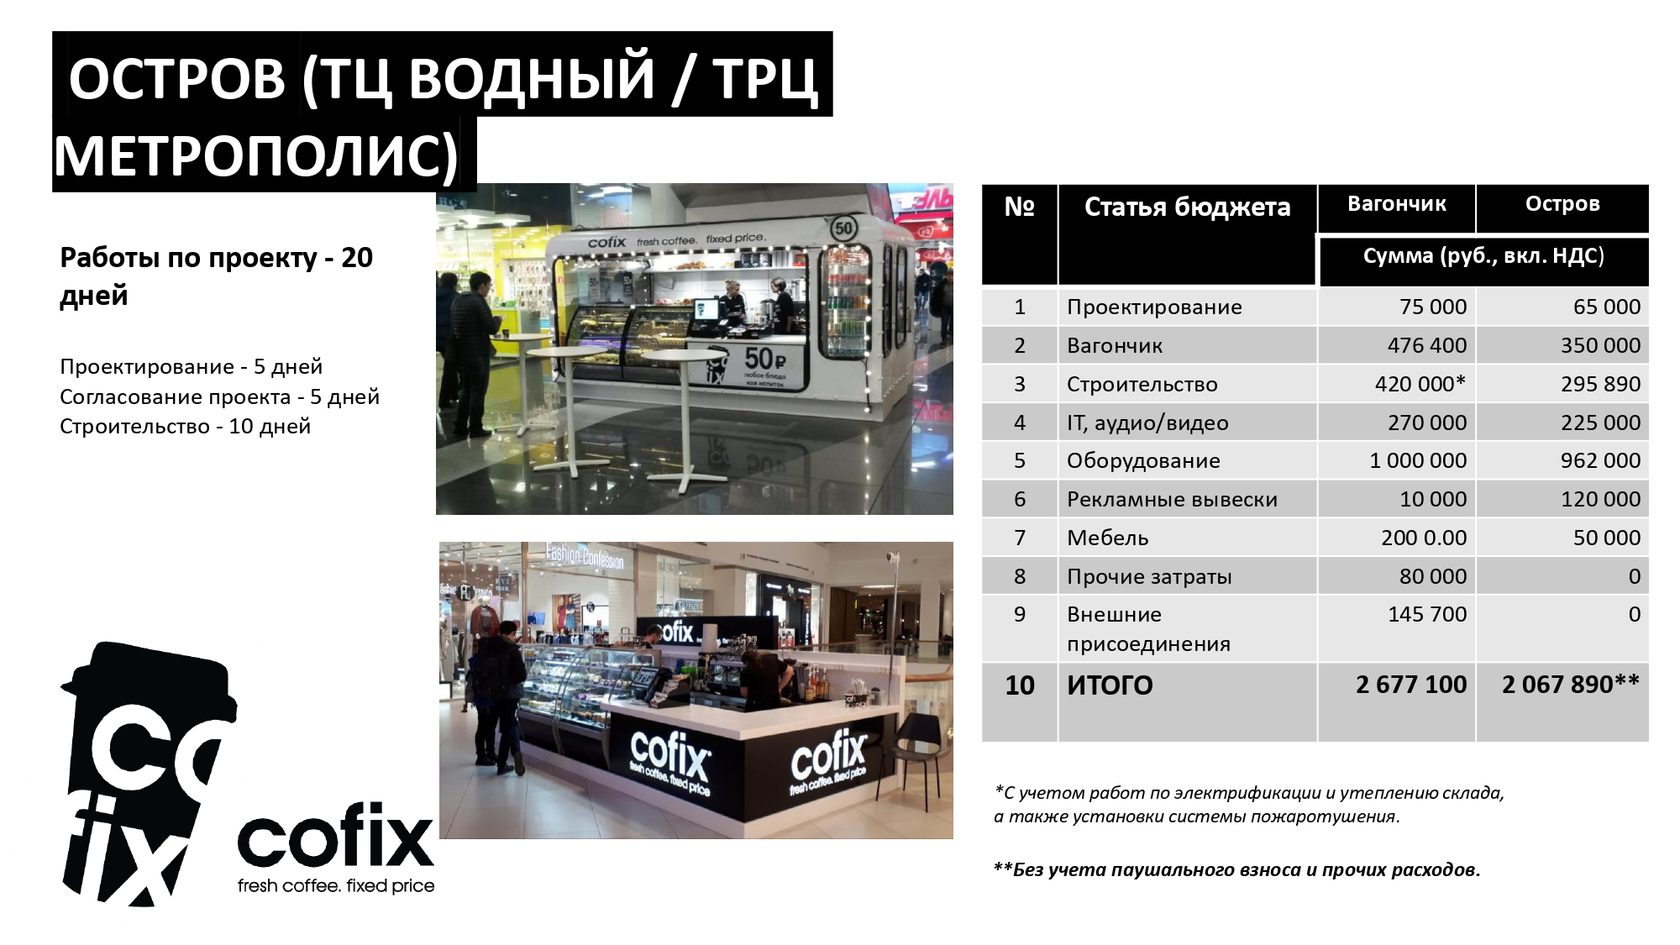 Cofix цены. Кофикс франшиза. Cofix фудтрак. Cofix реклама. Кофикс Москва.